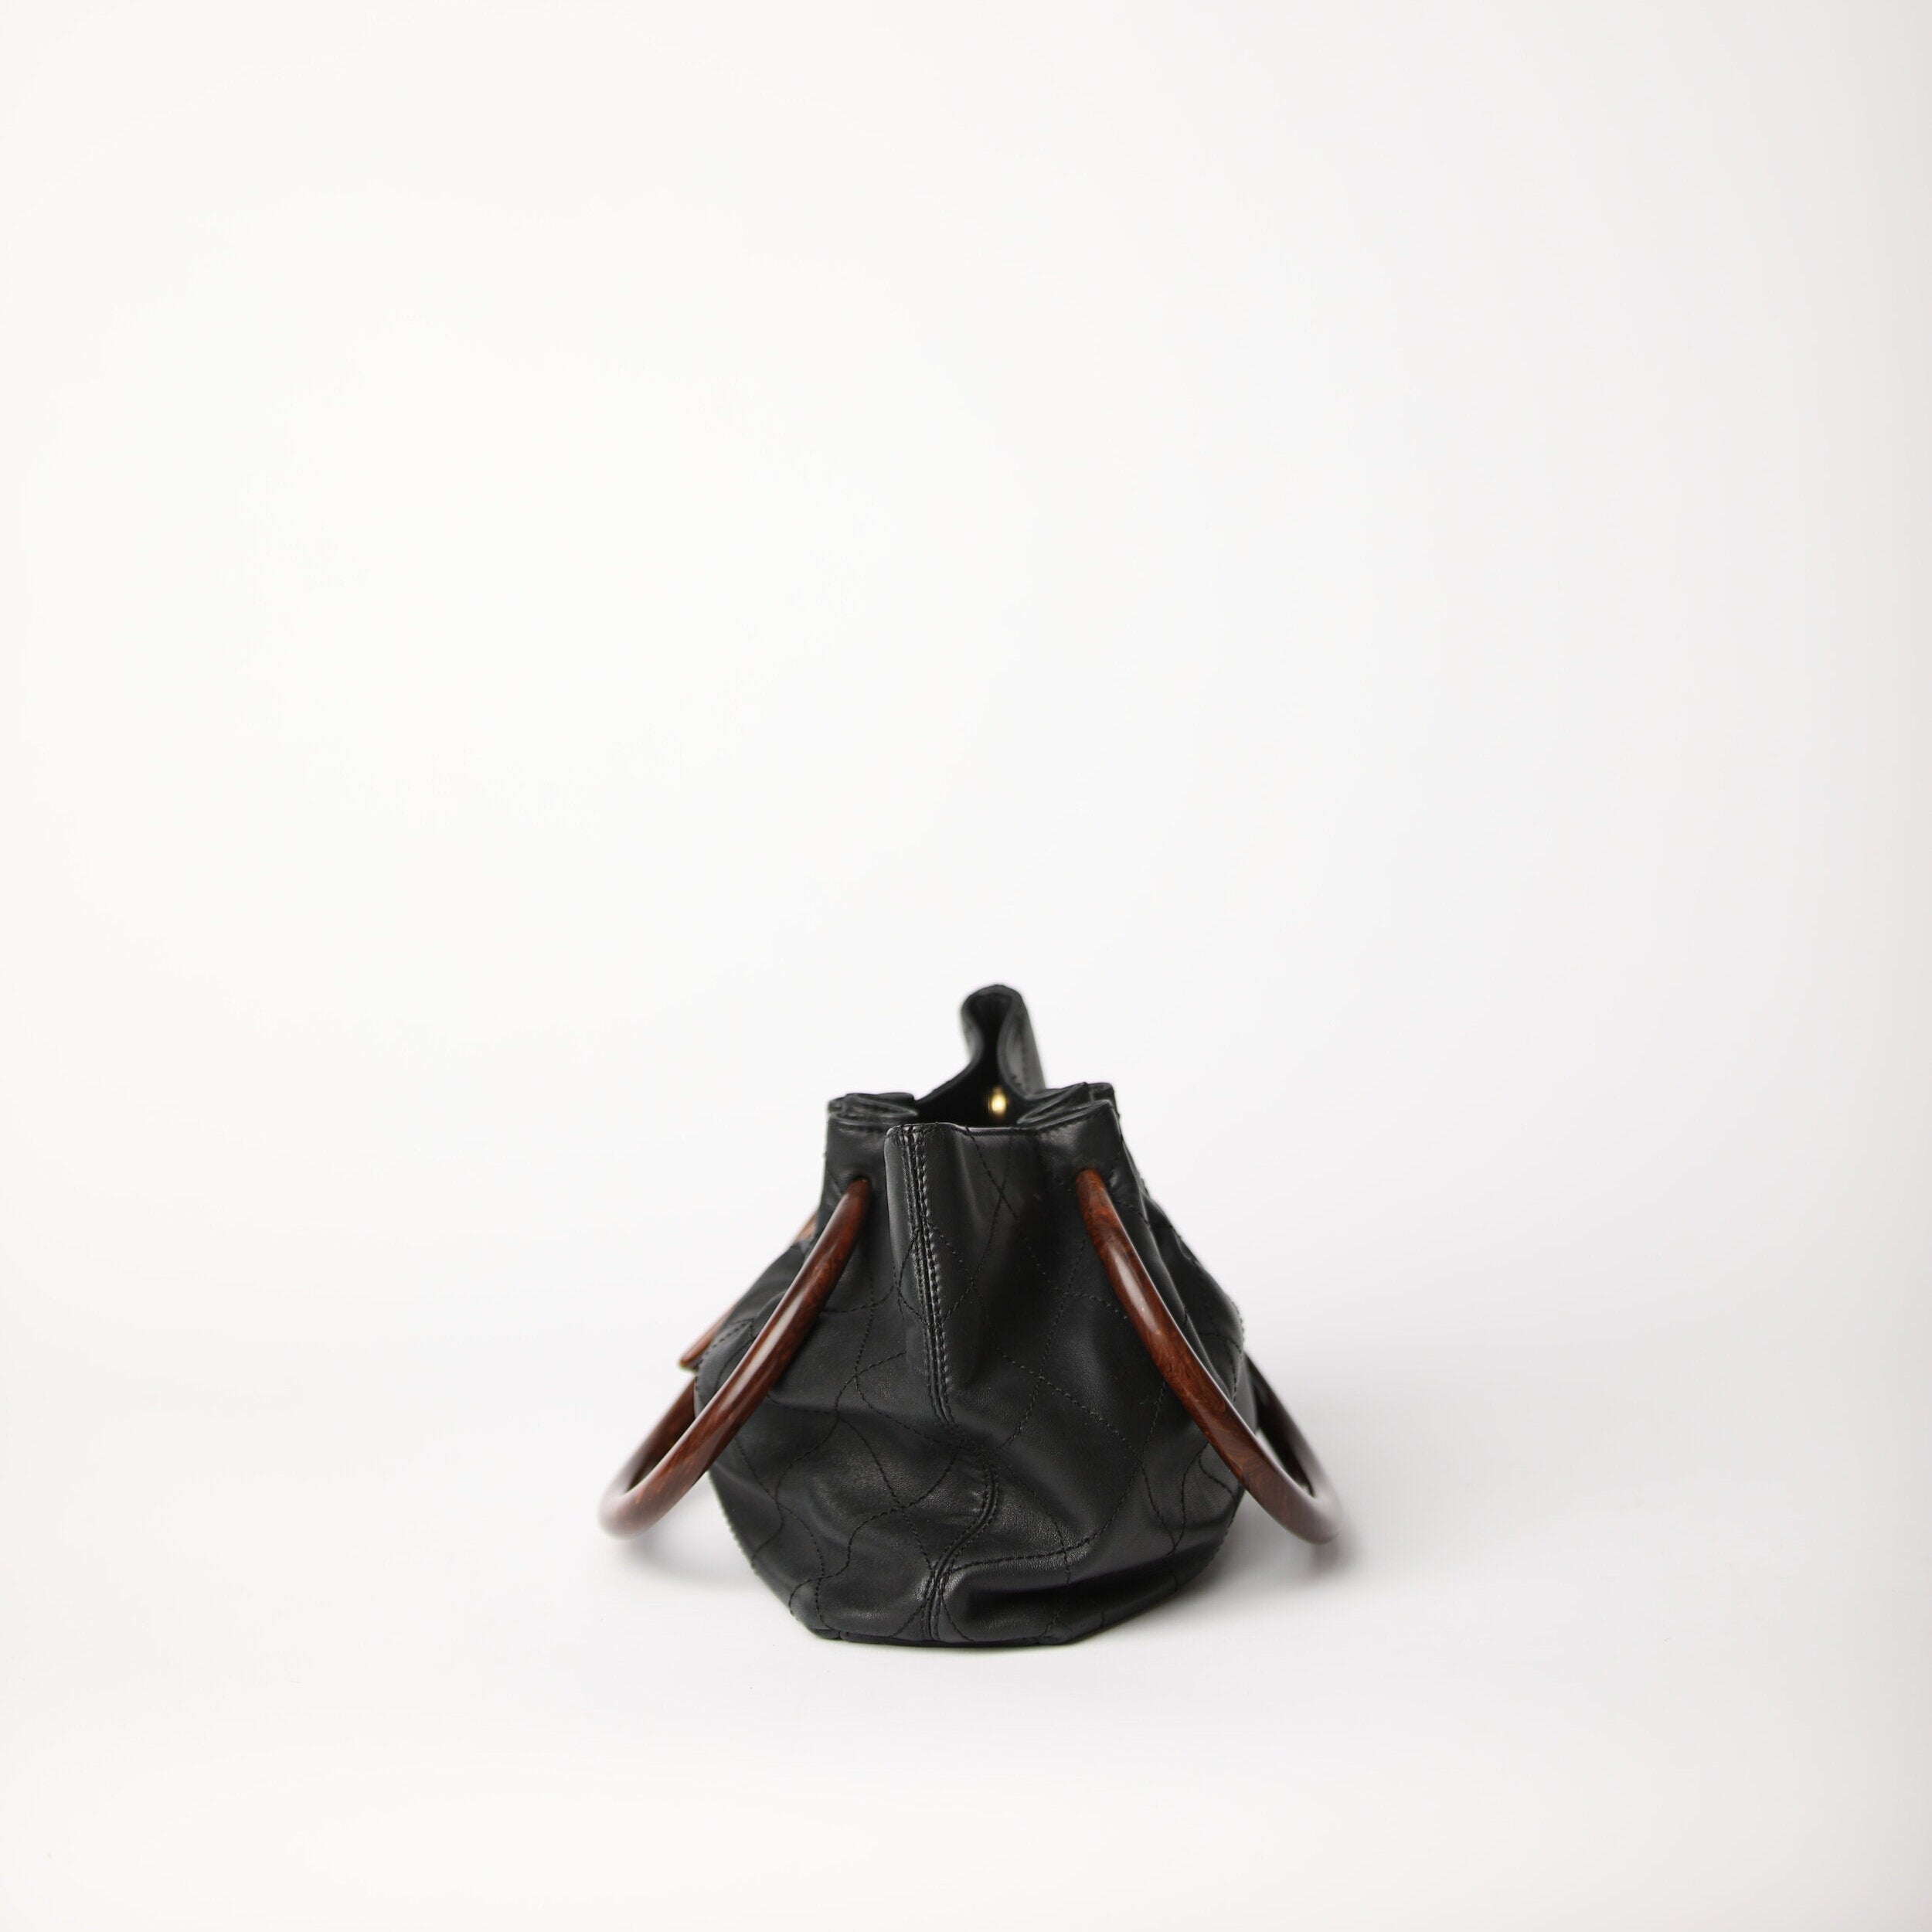 Leather Bag Strap Handles, Handbag Replacement Straps, Detachable